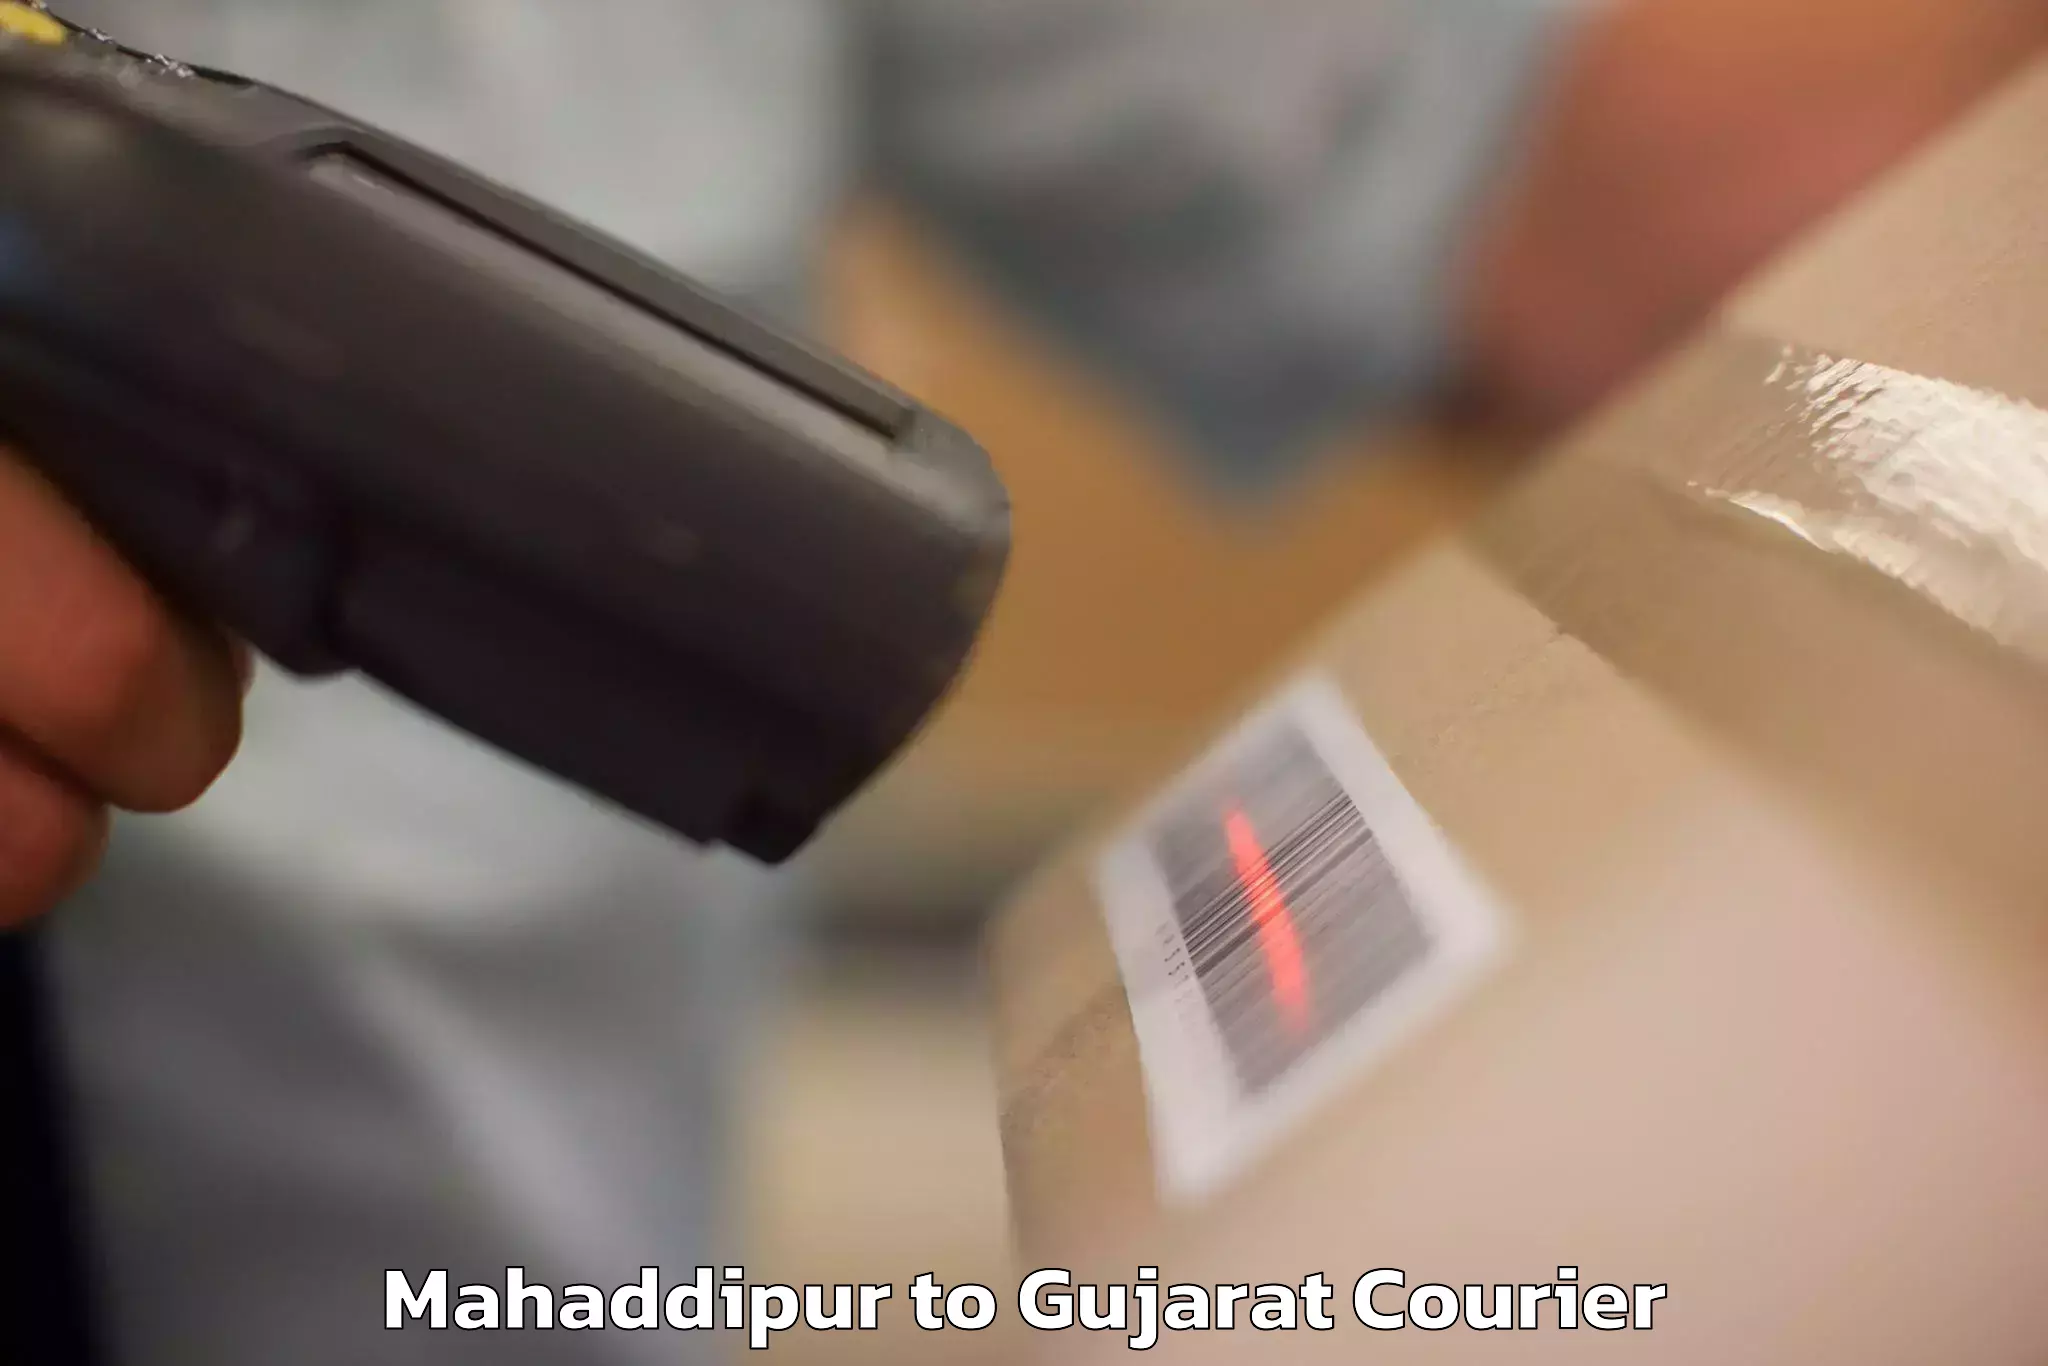 Digital baggage courier Mahaddipur to Kandla Port